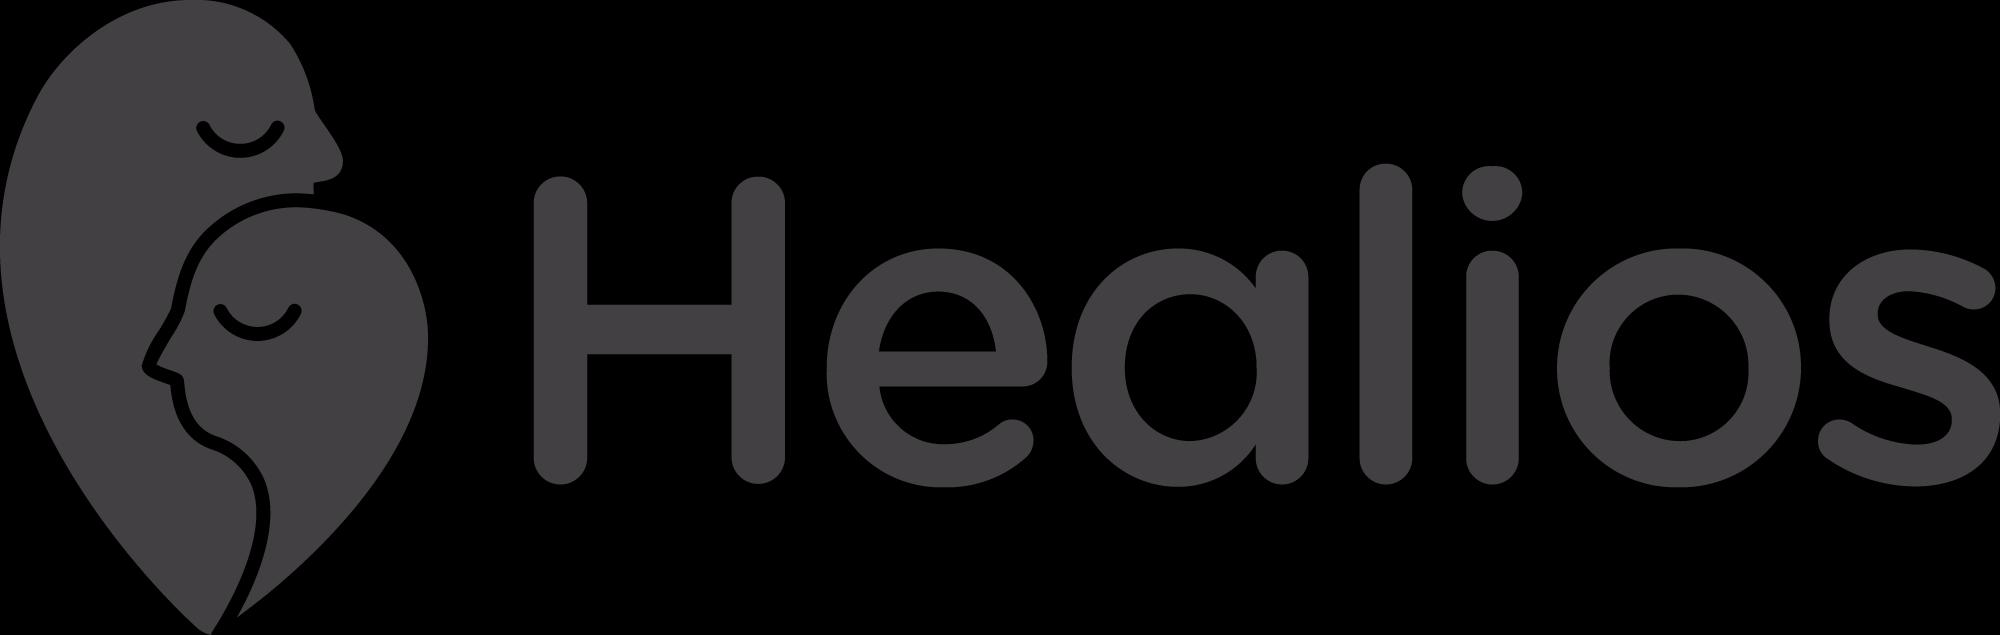 Healios_logo